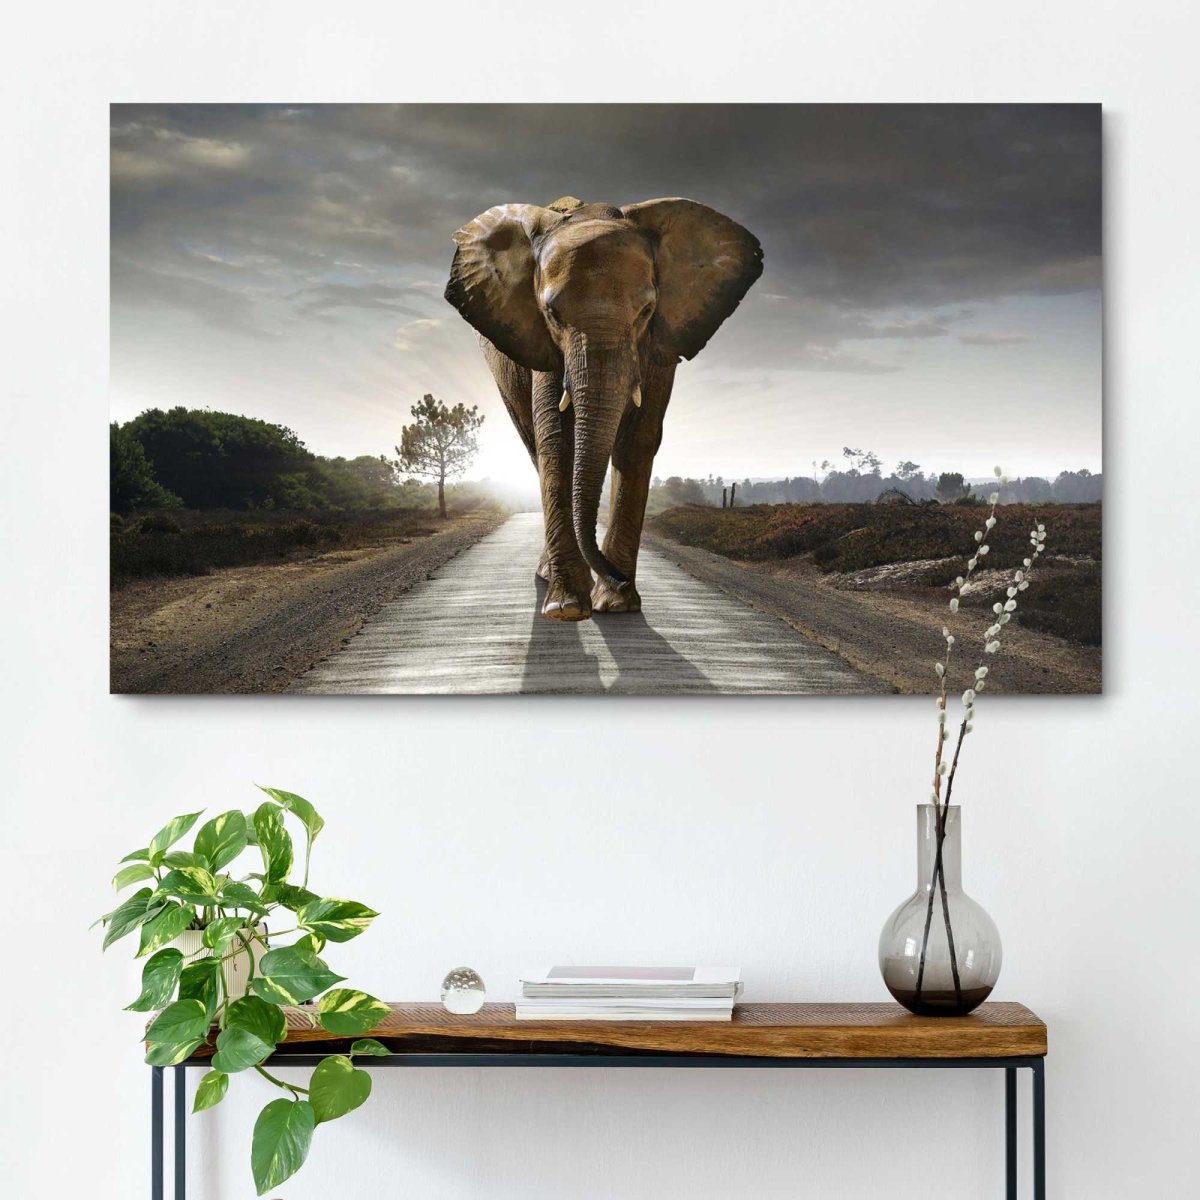 Schilderij Wandelende olifant 70x118 - Reinders